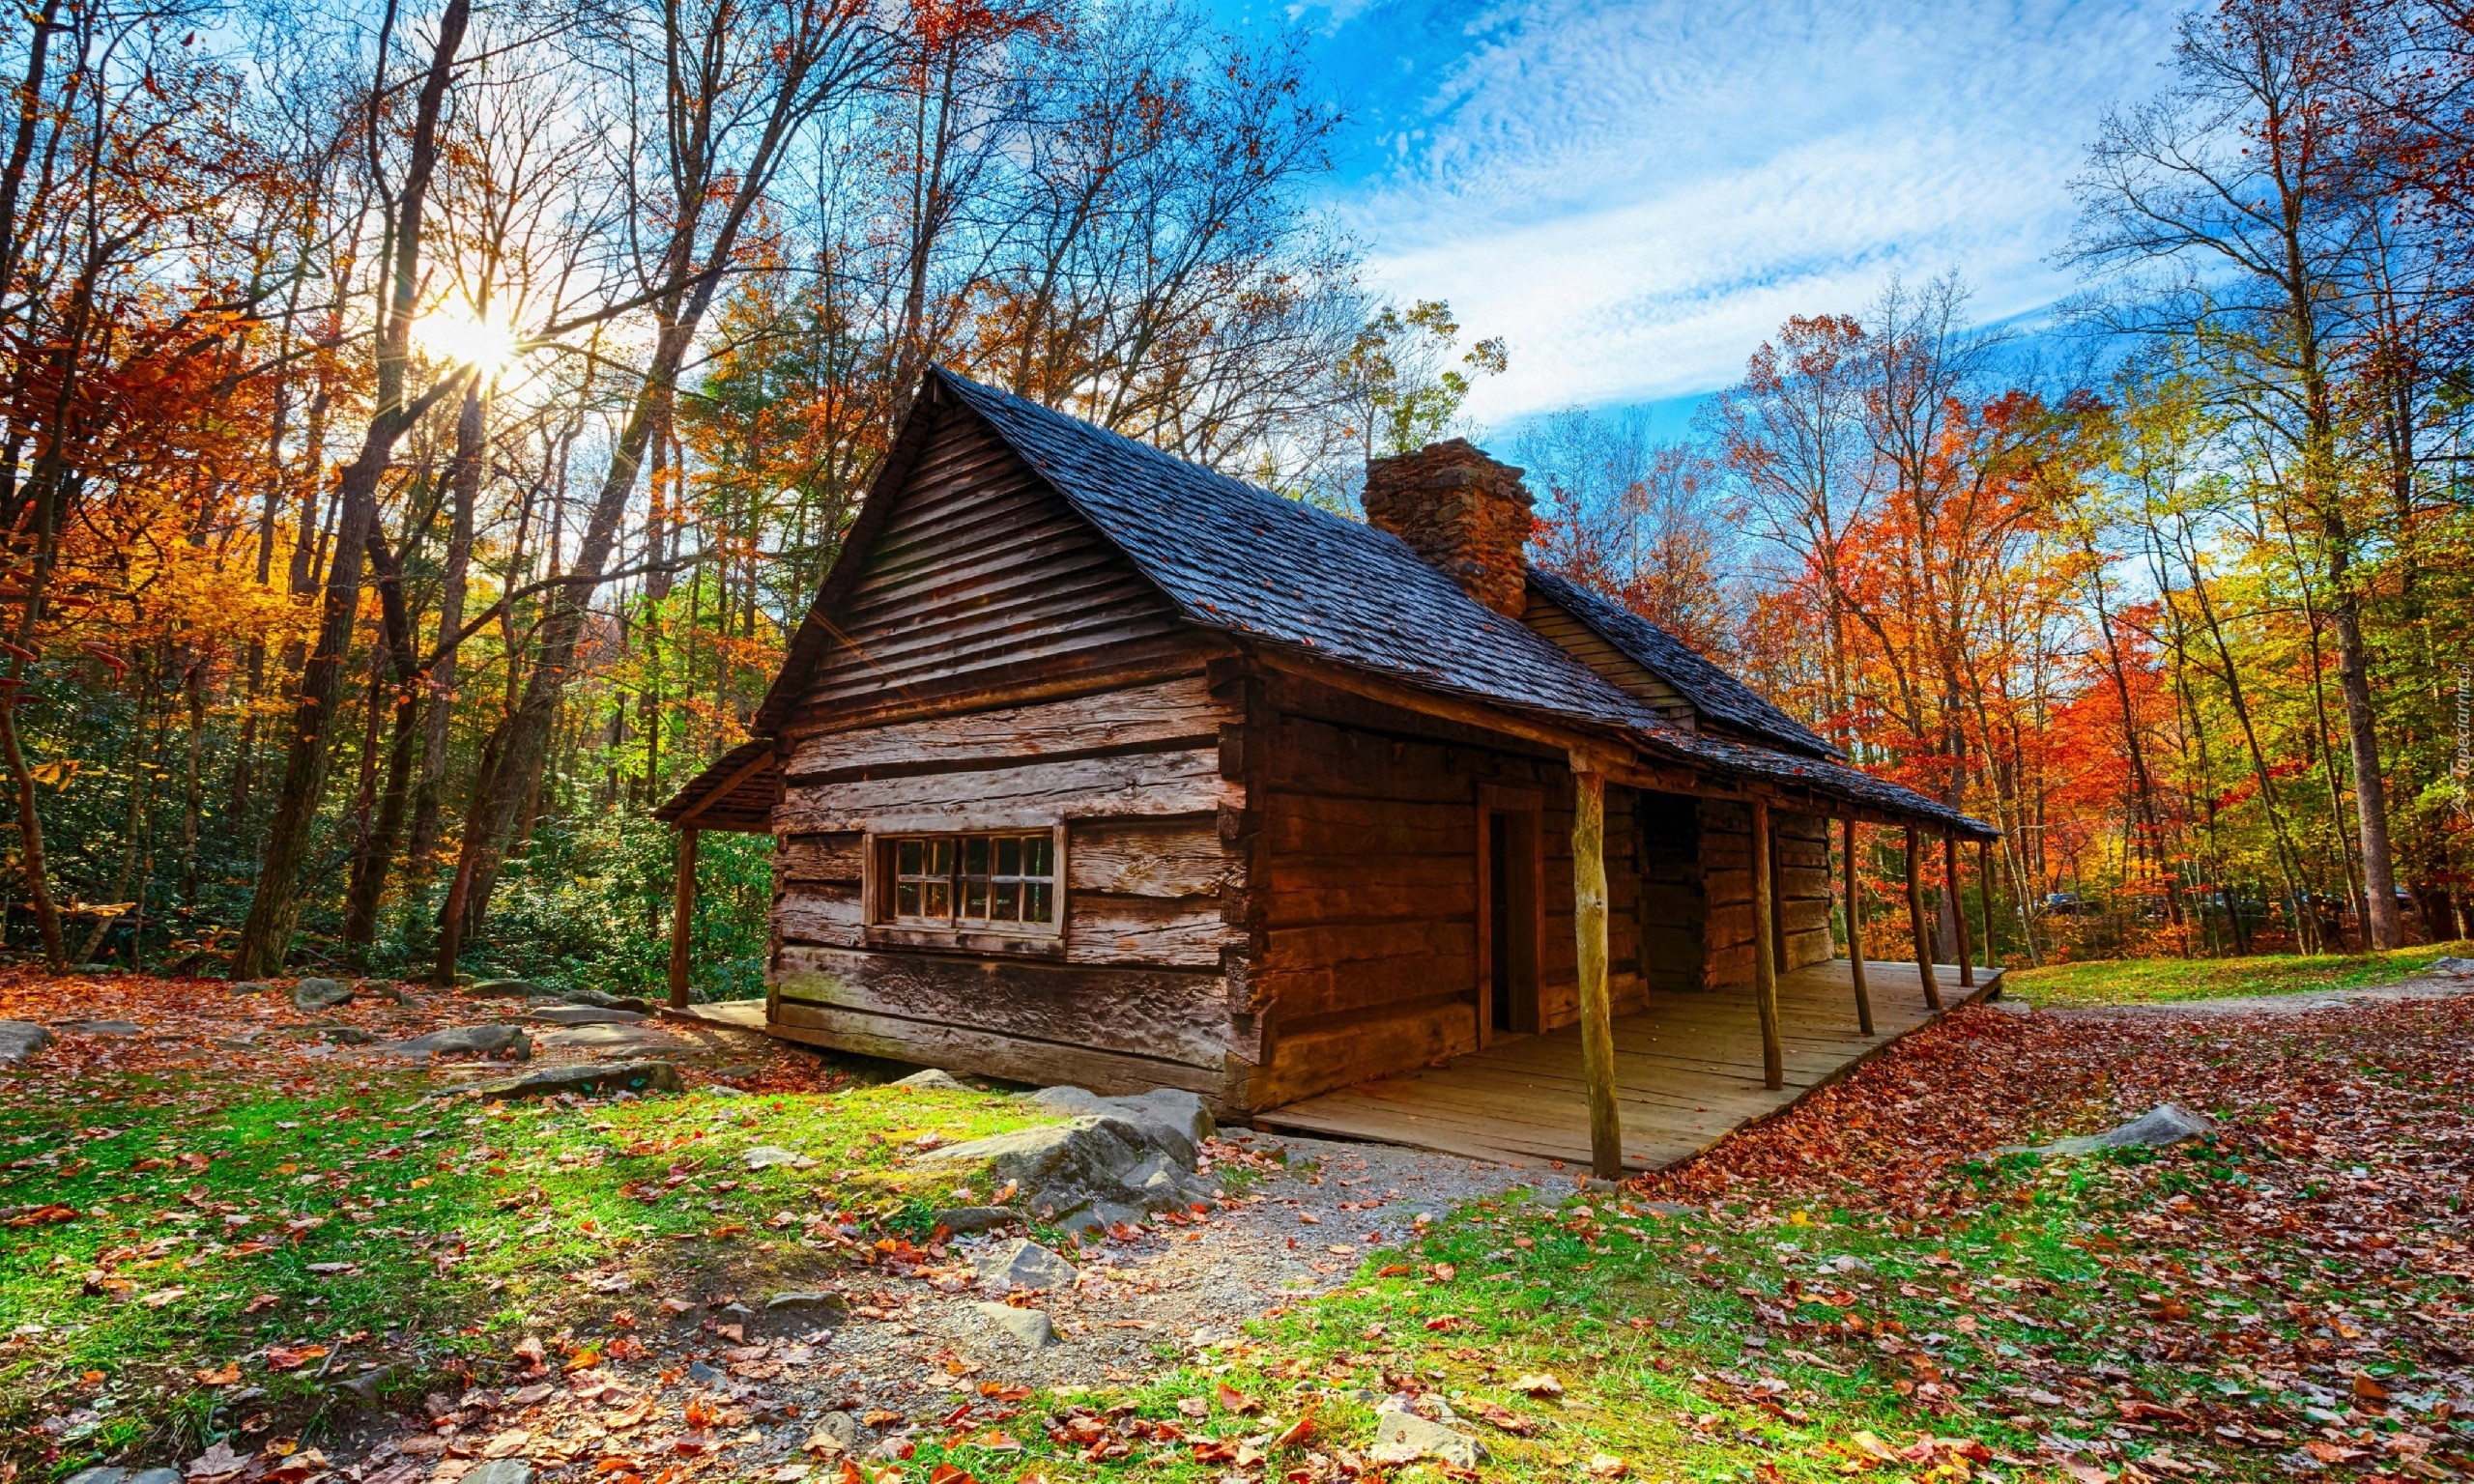 Stany Zjednoczone, Park Narodowy Great Smoky Mountains, Drzewa, Dom, Promienie słońca, Liście, Jesień